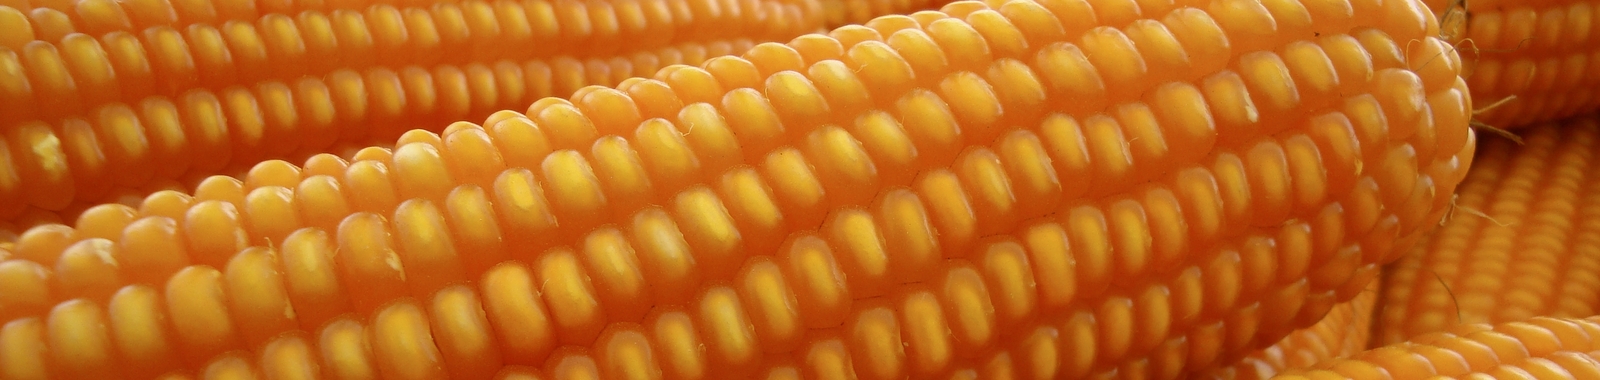 Aplicación de fertilizantes en maíz